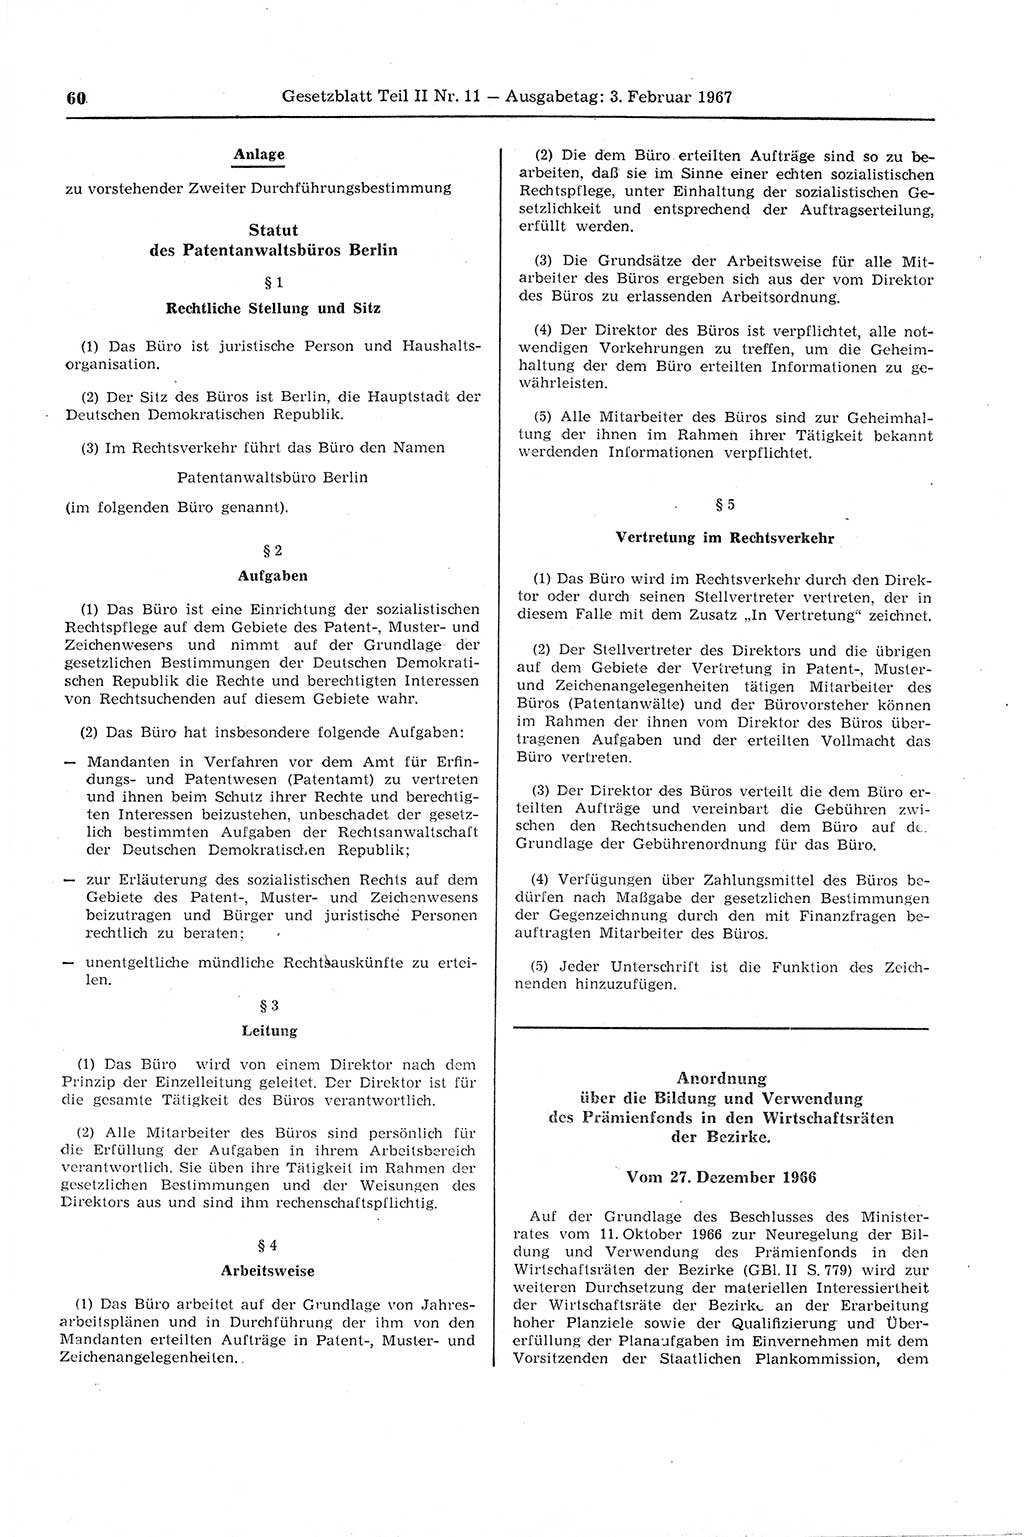 Gesetzblatt (GBl.) der Deutschen Demokratischen Republik (DDR) Teil ⅠⅠ 1967, Seite 60 (GBl. DDR ⅠⅠ 1967, S. 60)